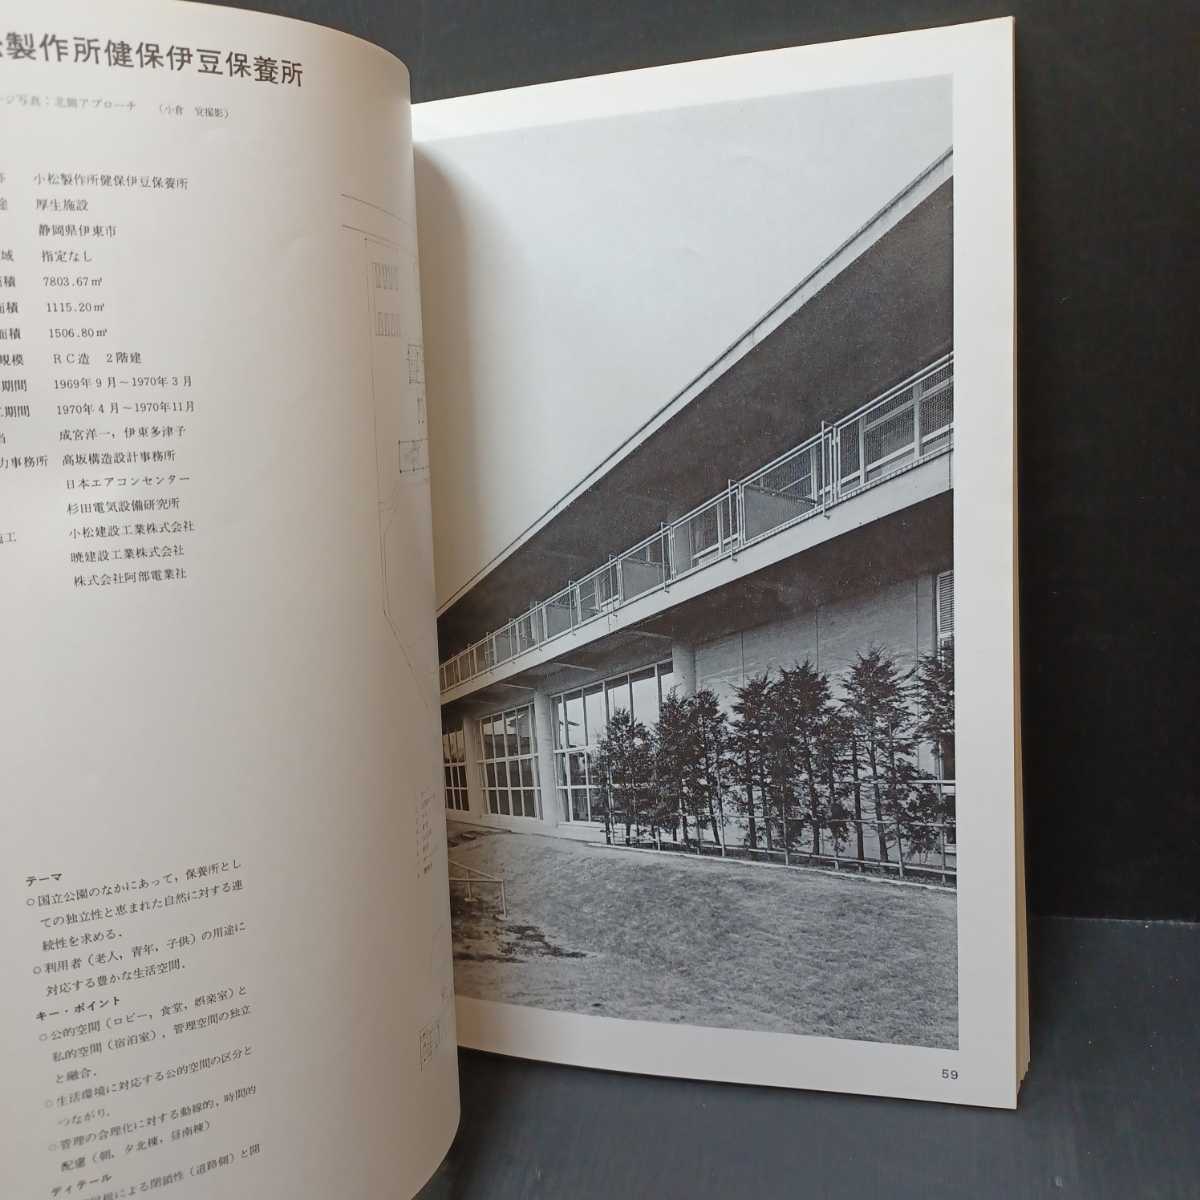 「SD 別冊 2 メンタル・エレメントを軸として: 増沢建築設計事務所1962-1972」_画像8